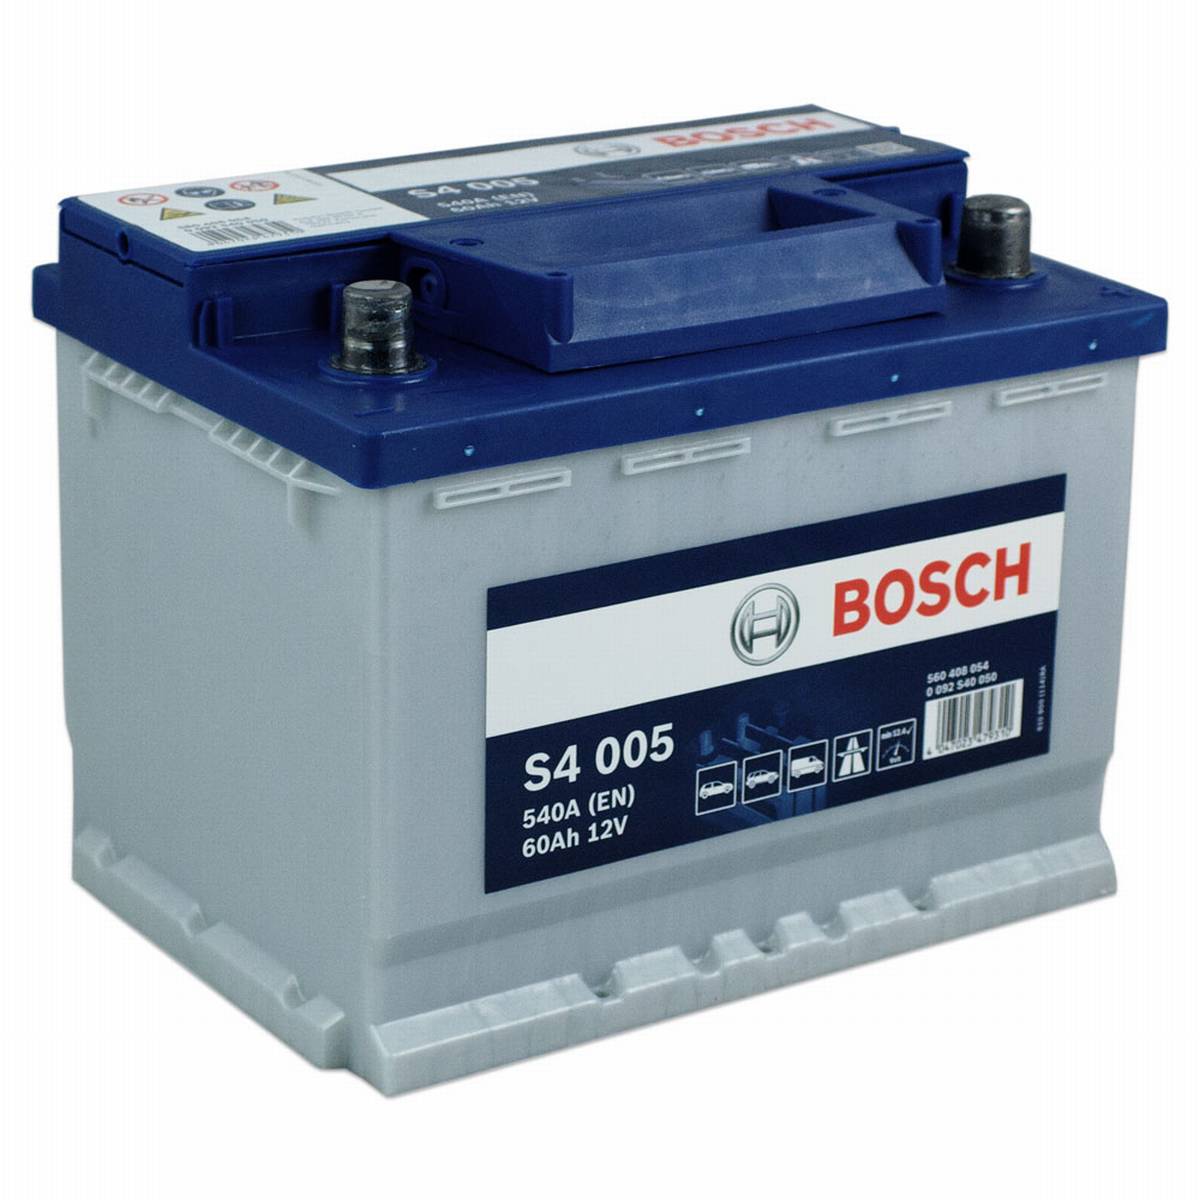 Batteria auto Bosch S4 005 12V 60Ah 540A